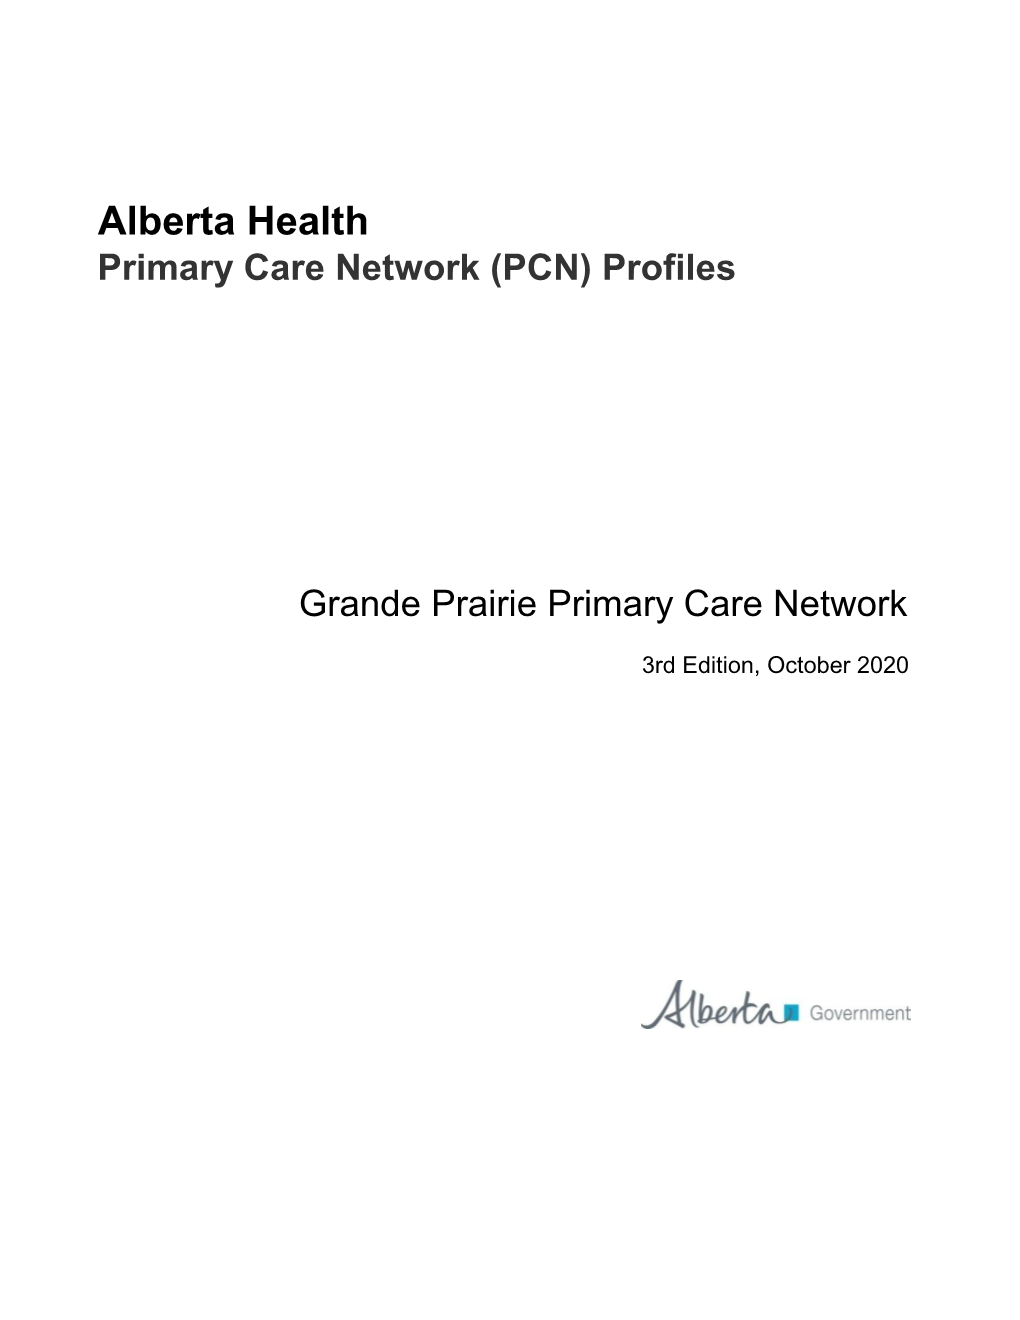 Alberta Health Primary Care Network (PCN) Profiles: Grande Prairie PCN